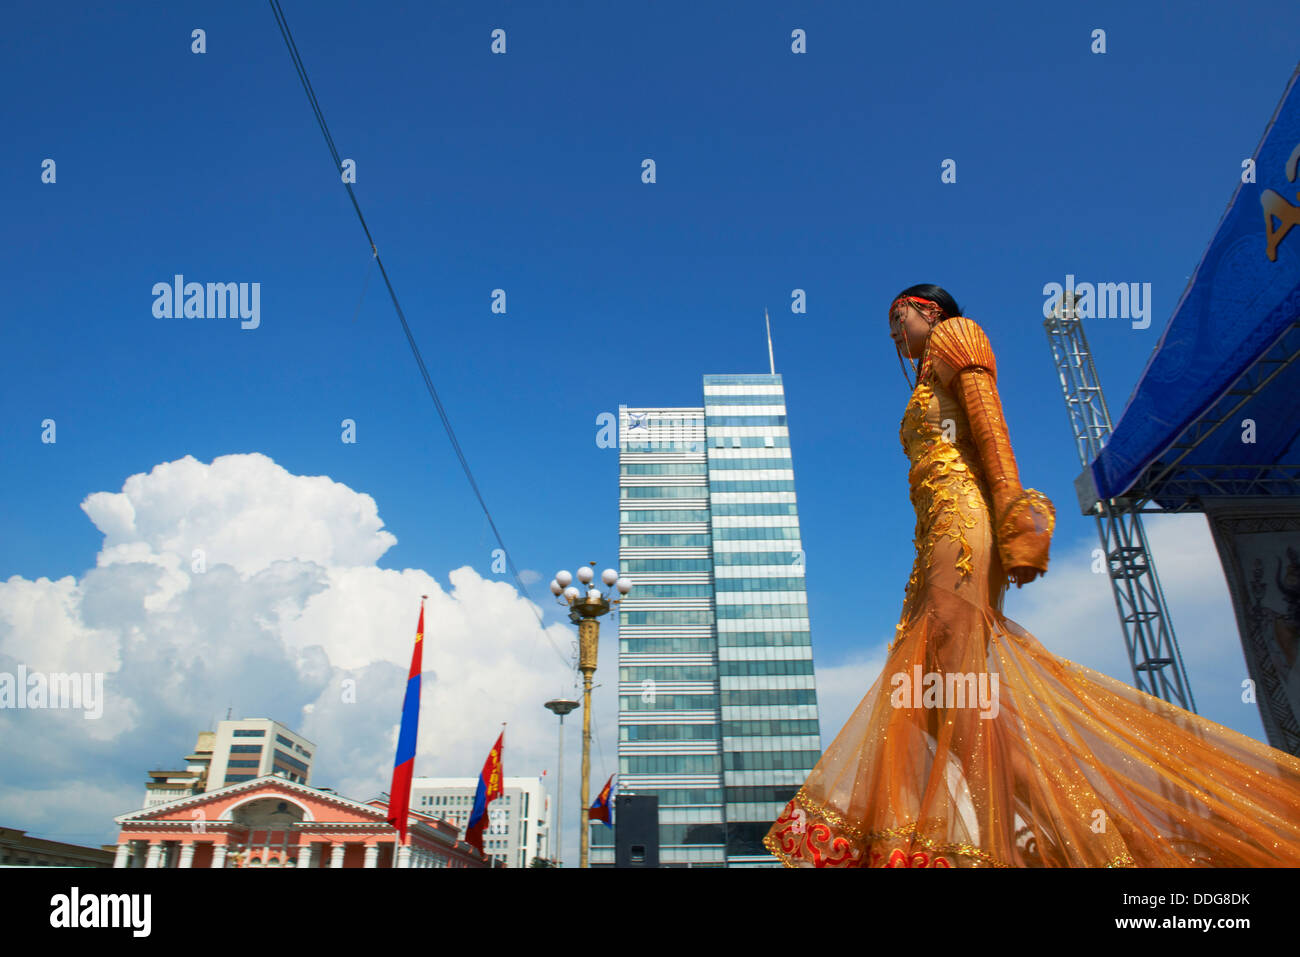 La Mongolie, Oulan Bator, Sukhbaatar Square, parade de costumes pour le festival Naadam, fashion show Banque D'Images